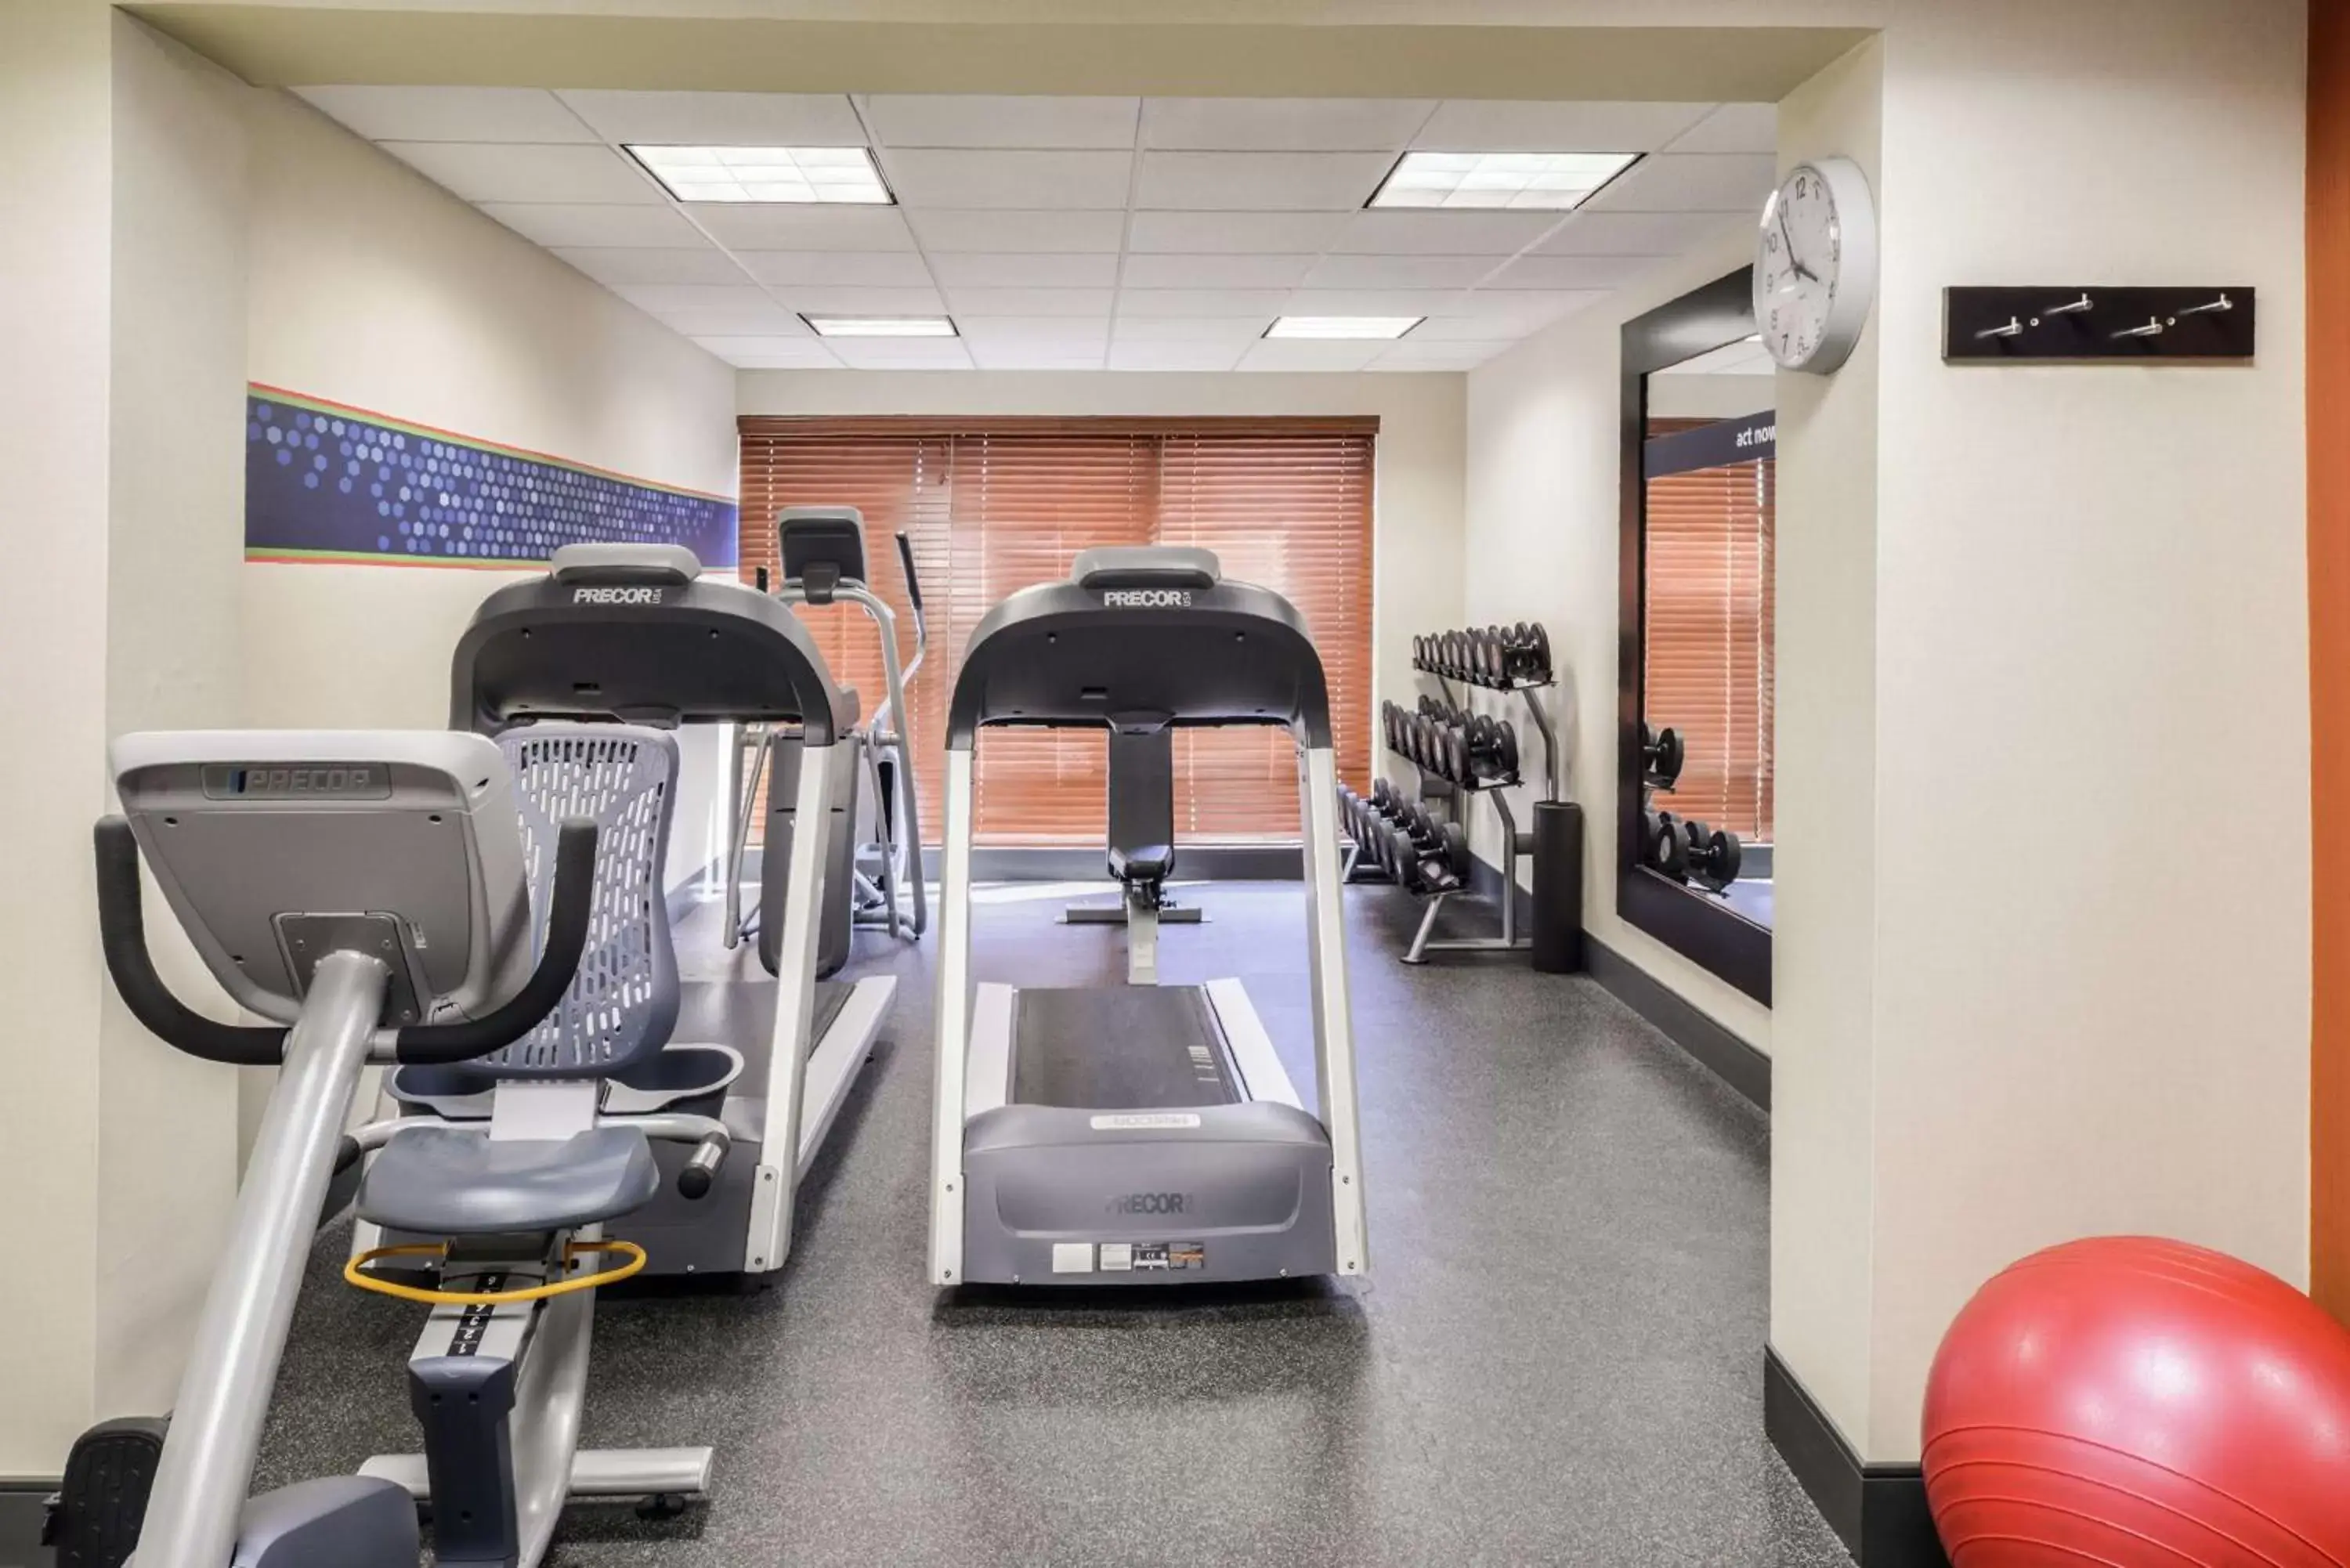 Fitness centre/facilities, Fitness Center/Facilities in Hampton Inn Martinsburg